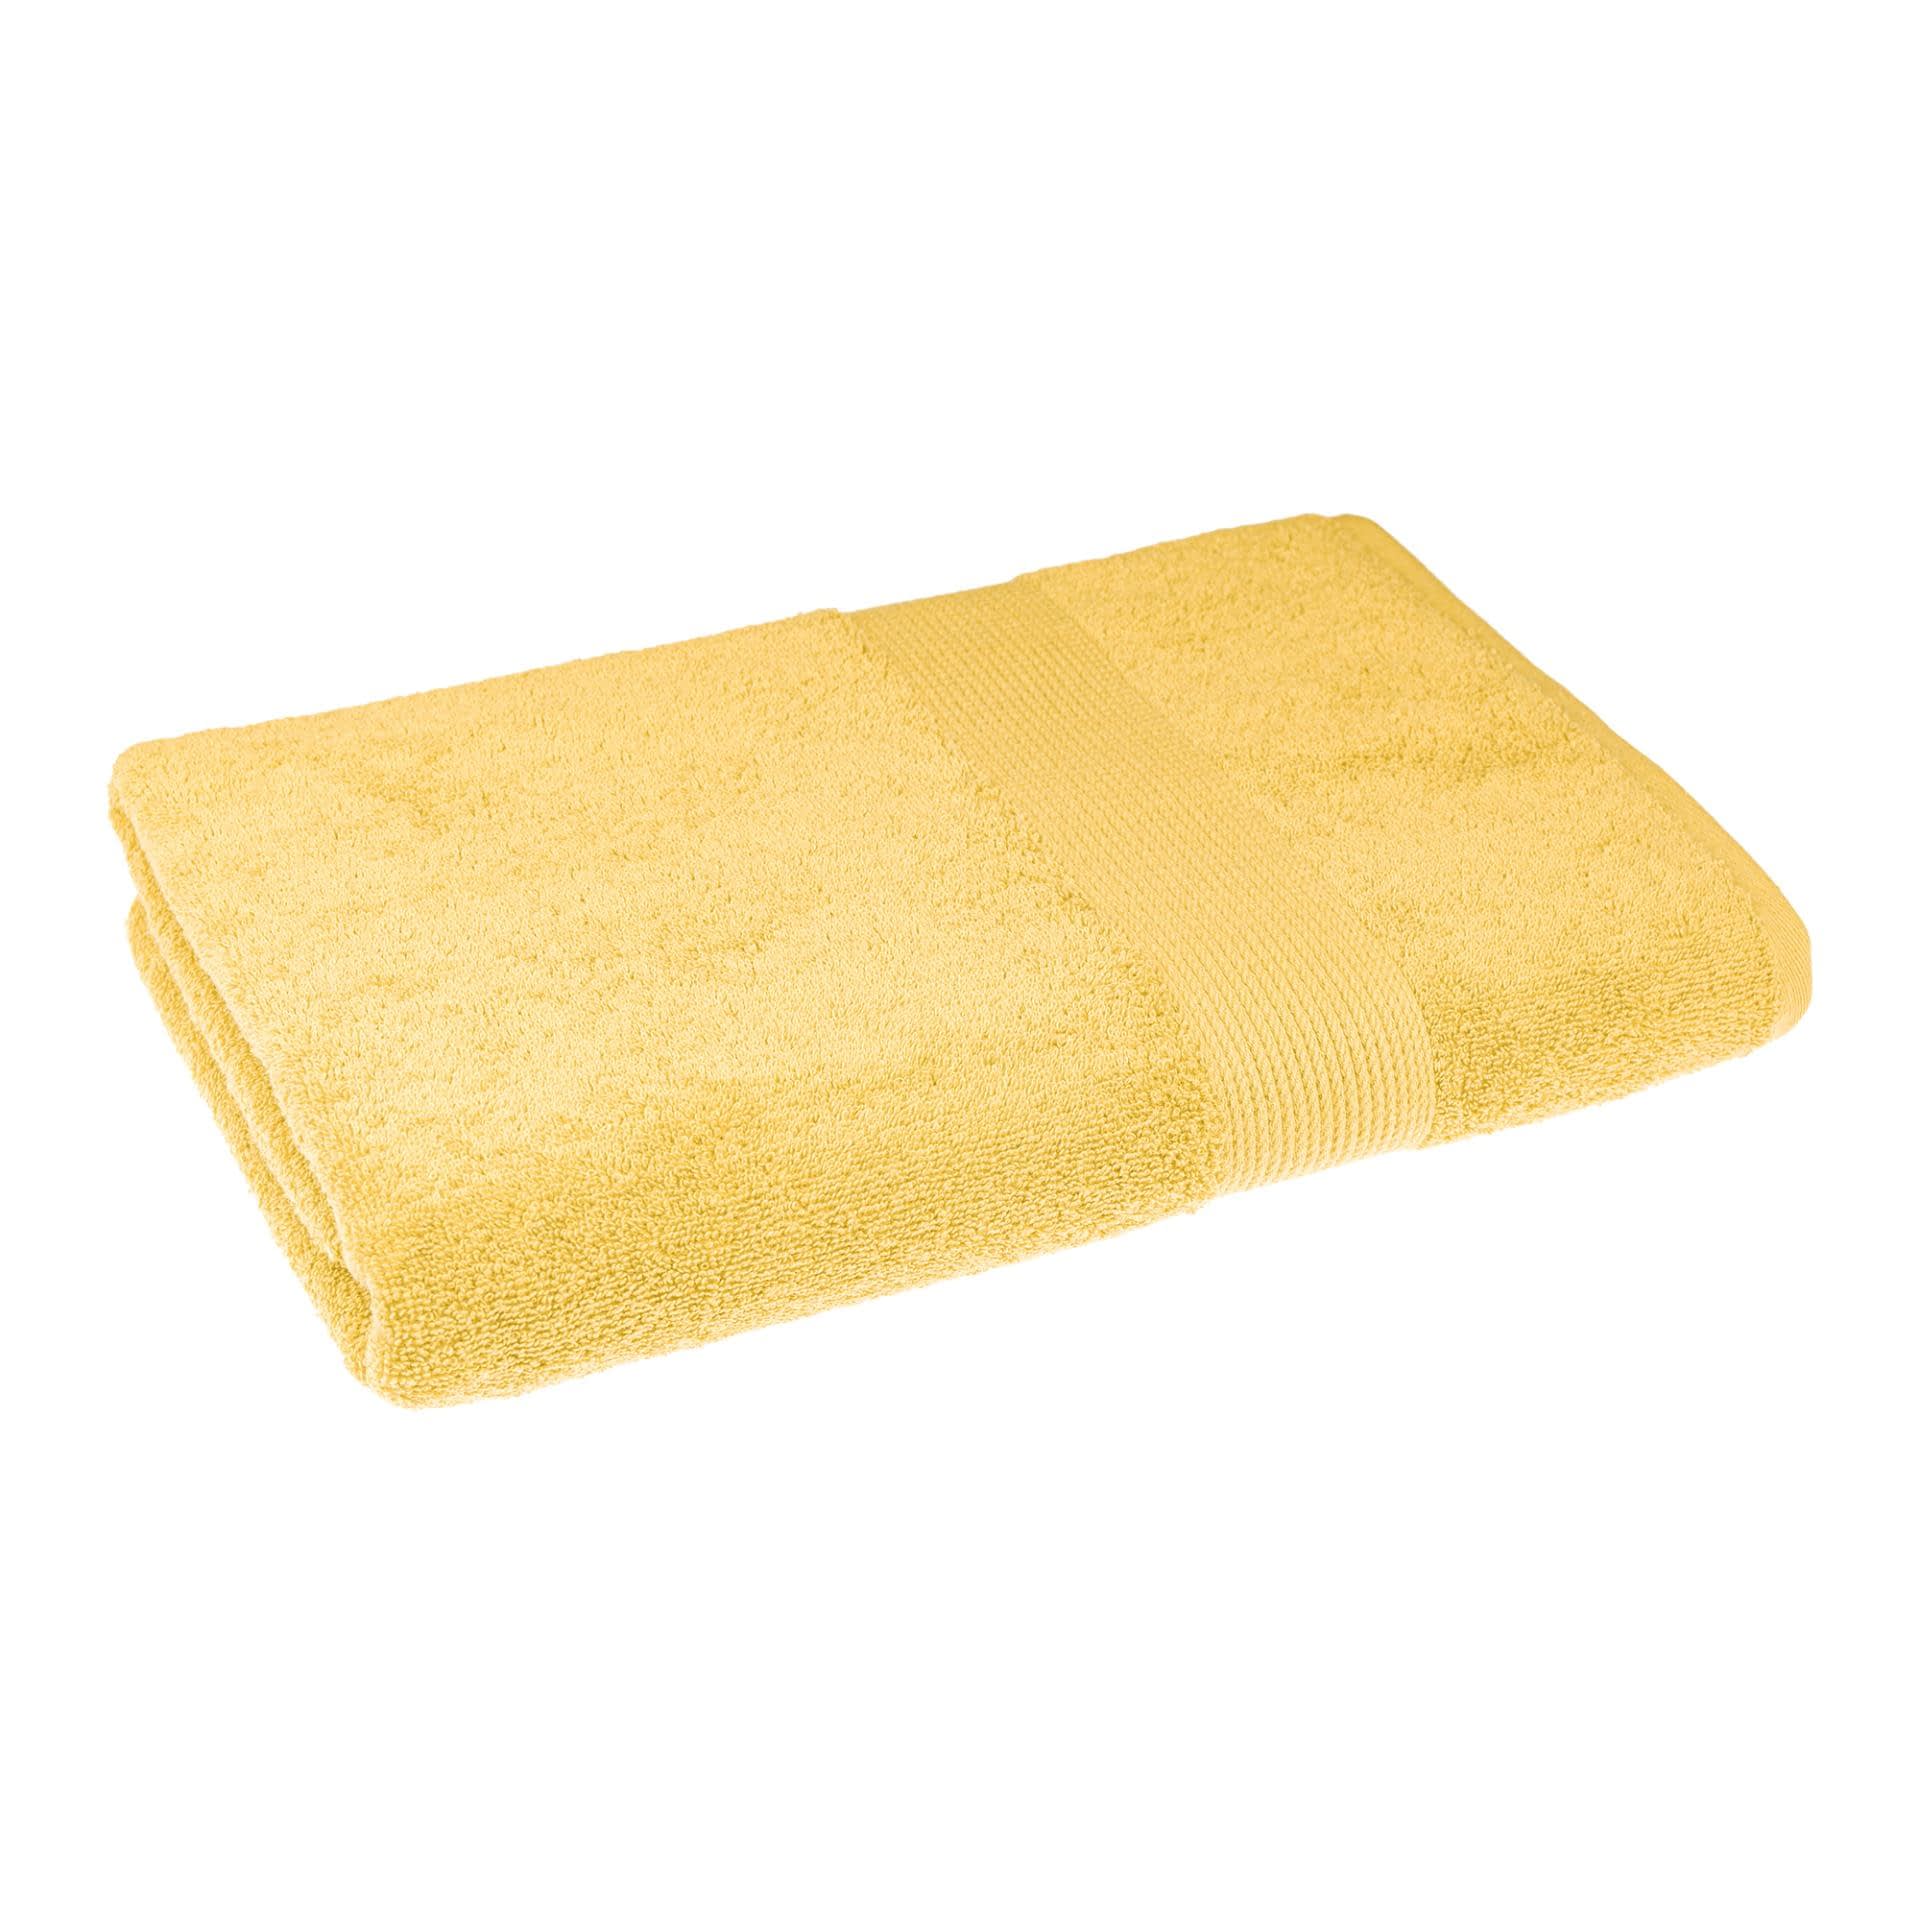 Ткани махровые полотенца - Полотенце махровое 70х140 желтый